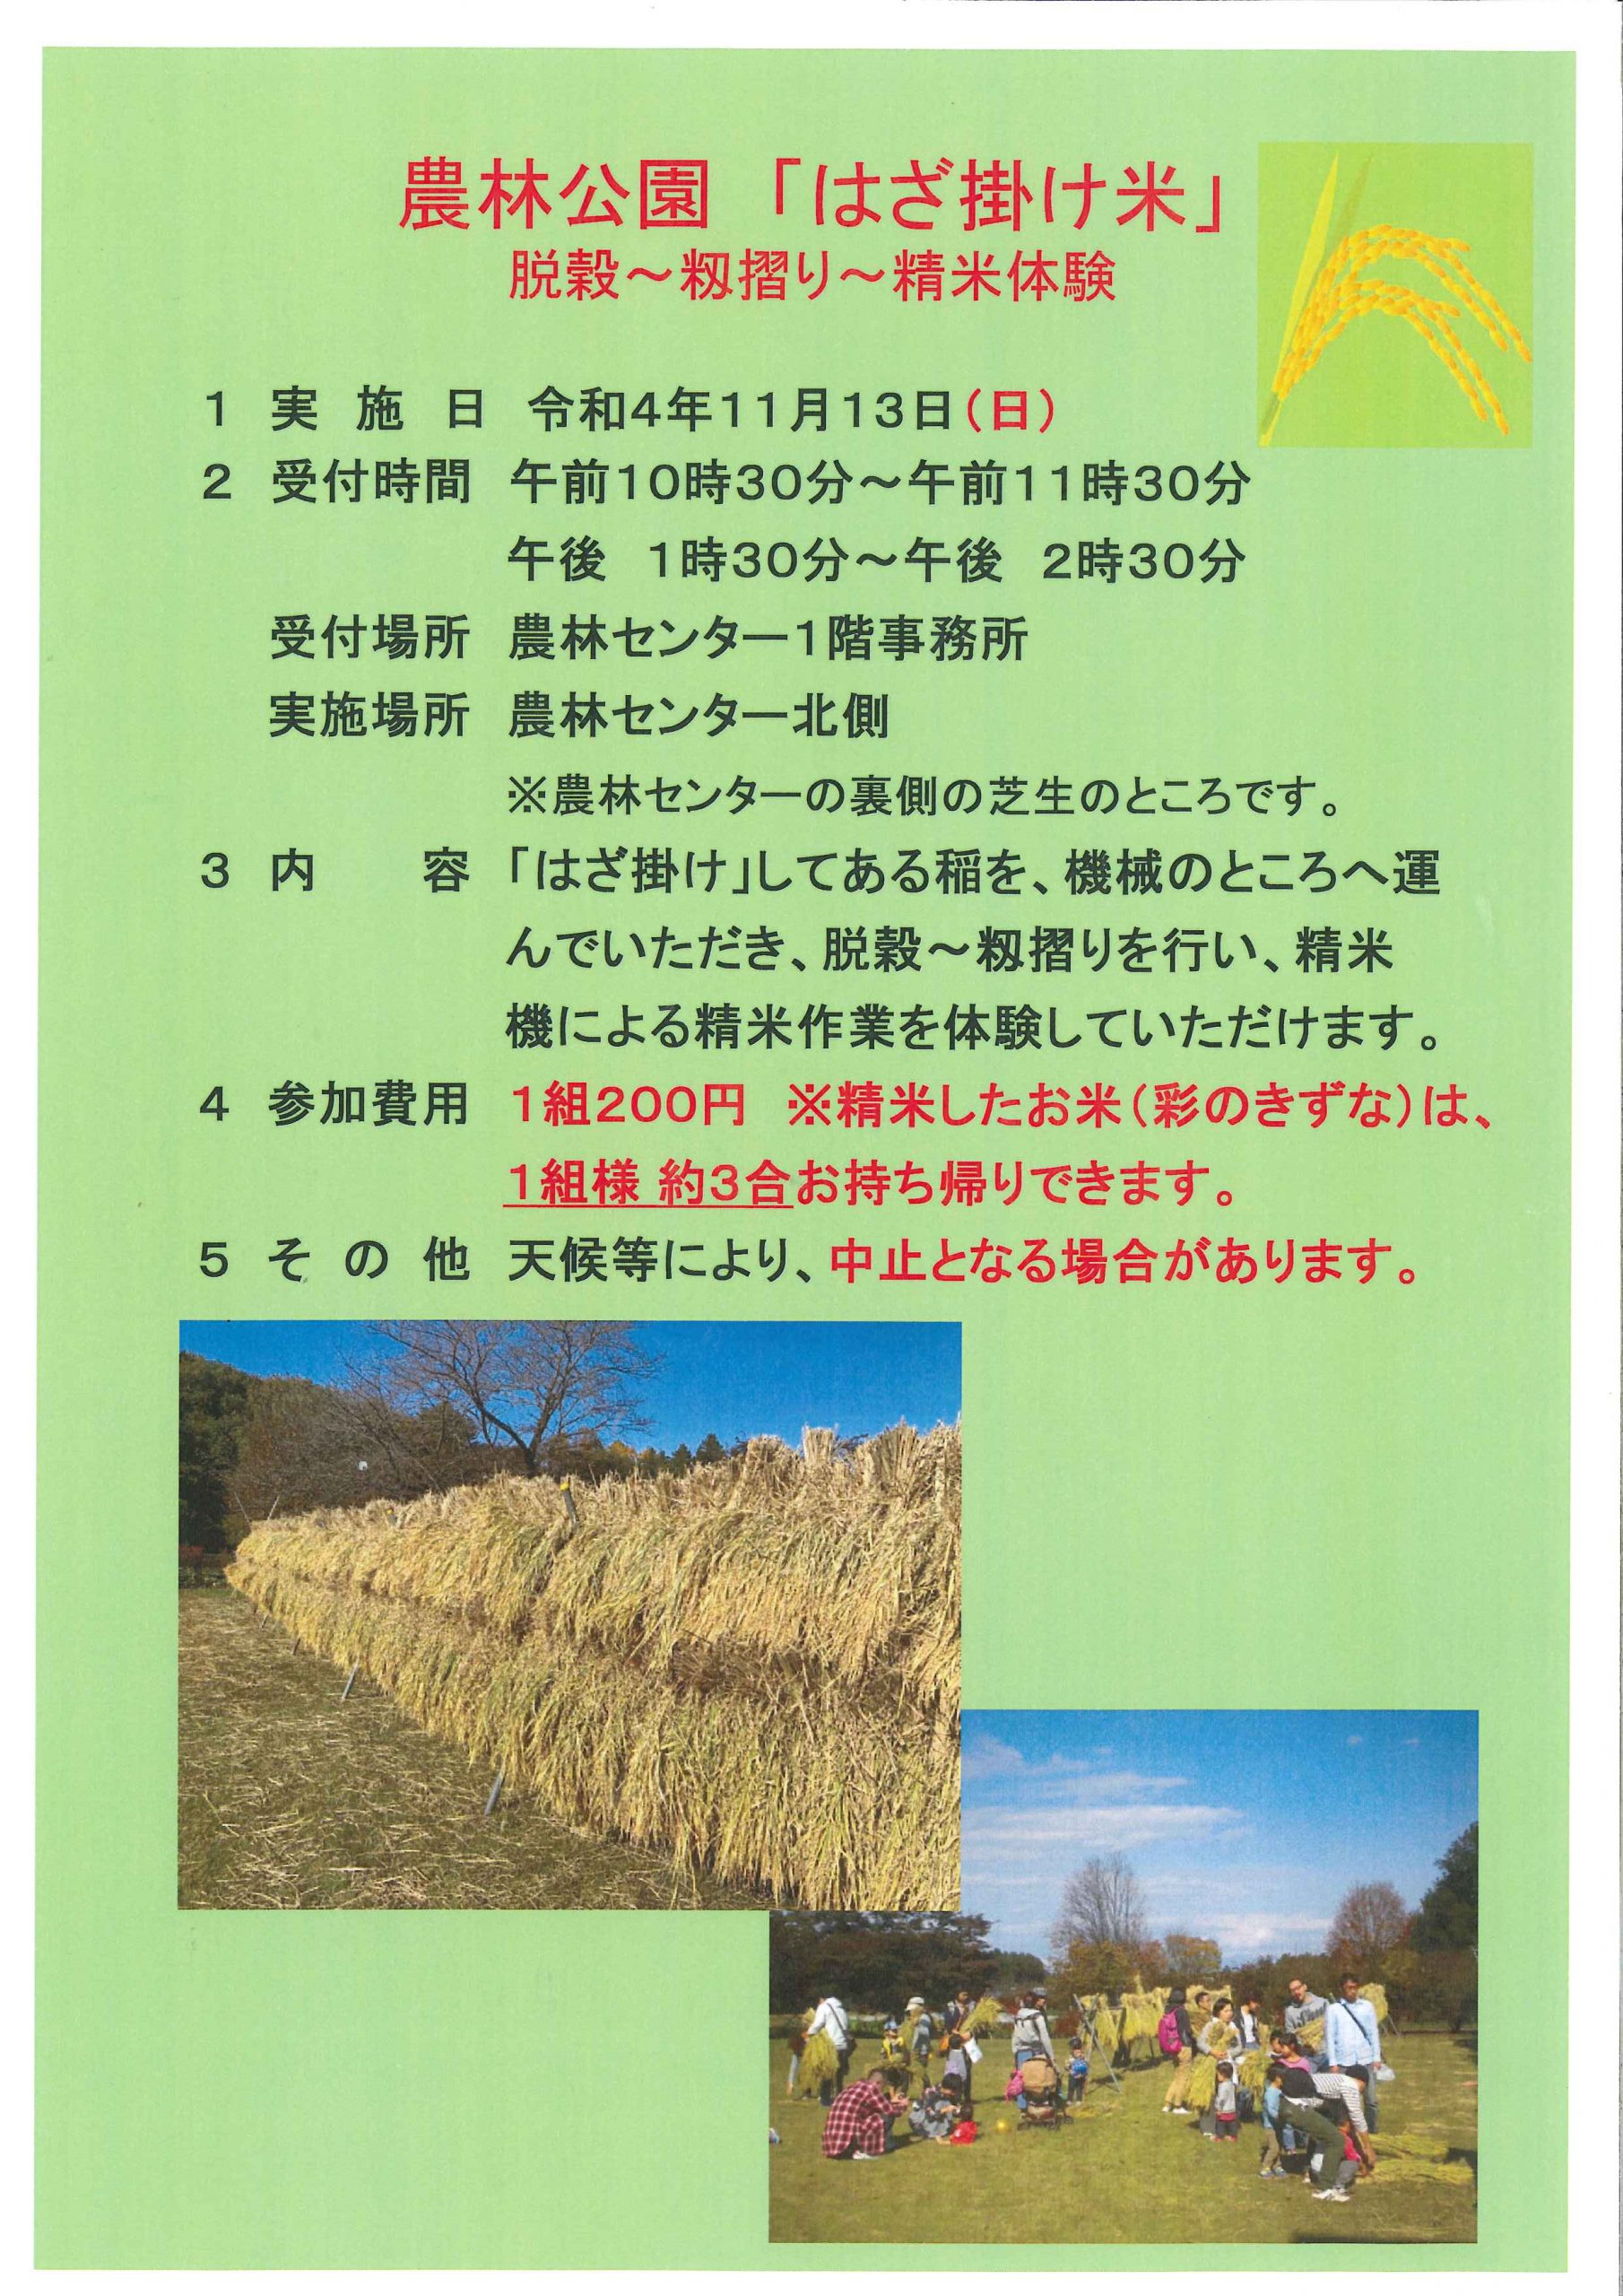 農林公園「はざ掛け米」脱穀～籾摺り～精米体験を実施します。